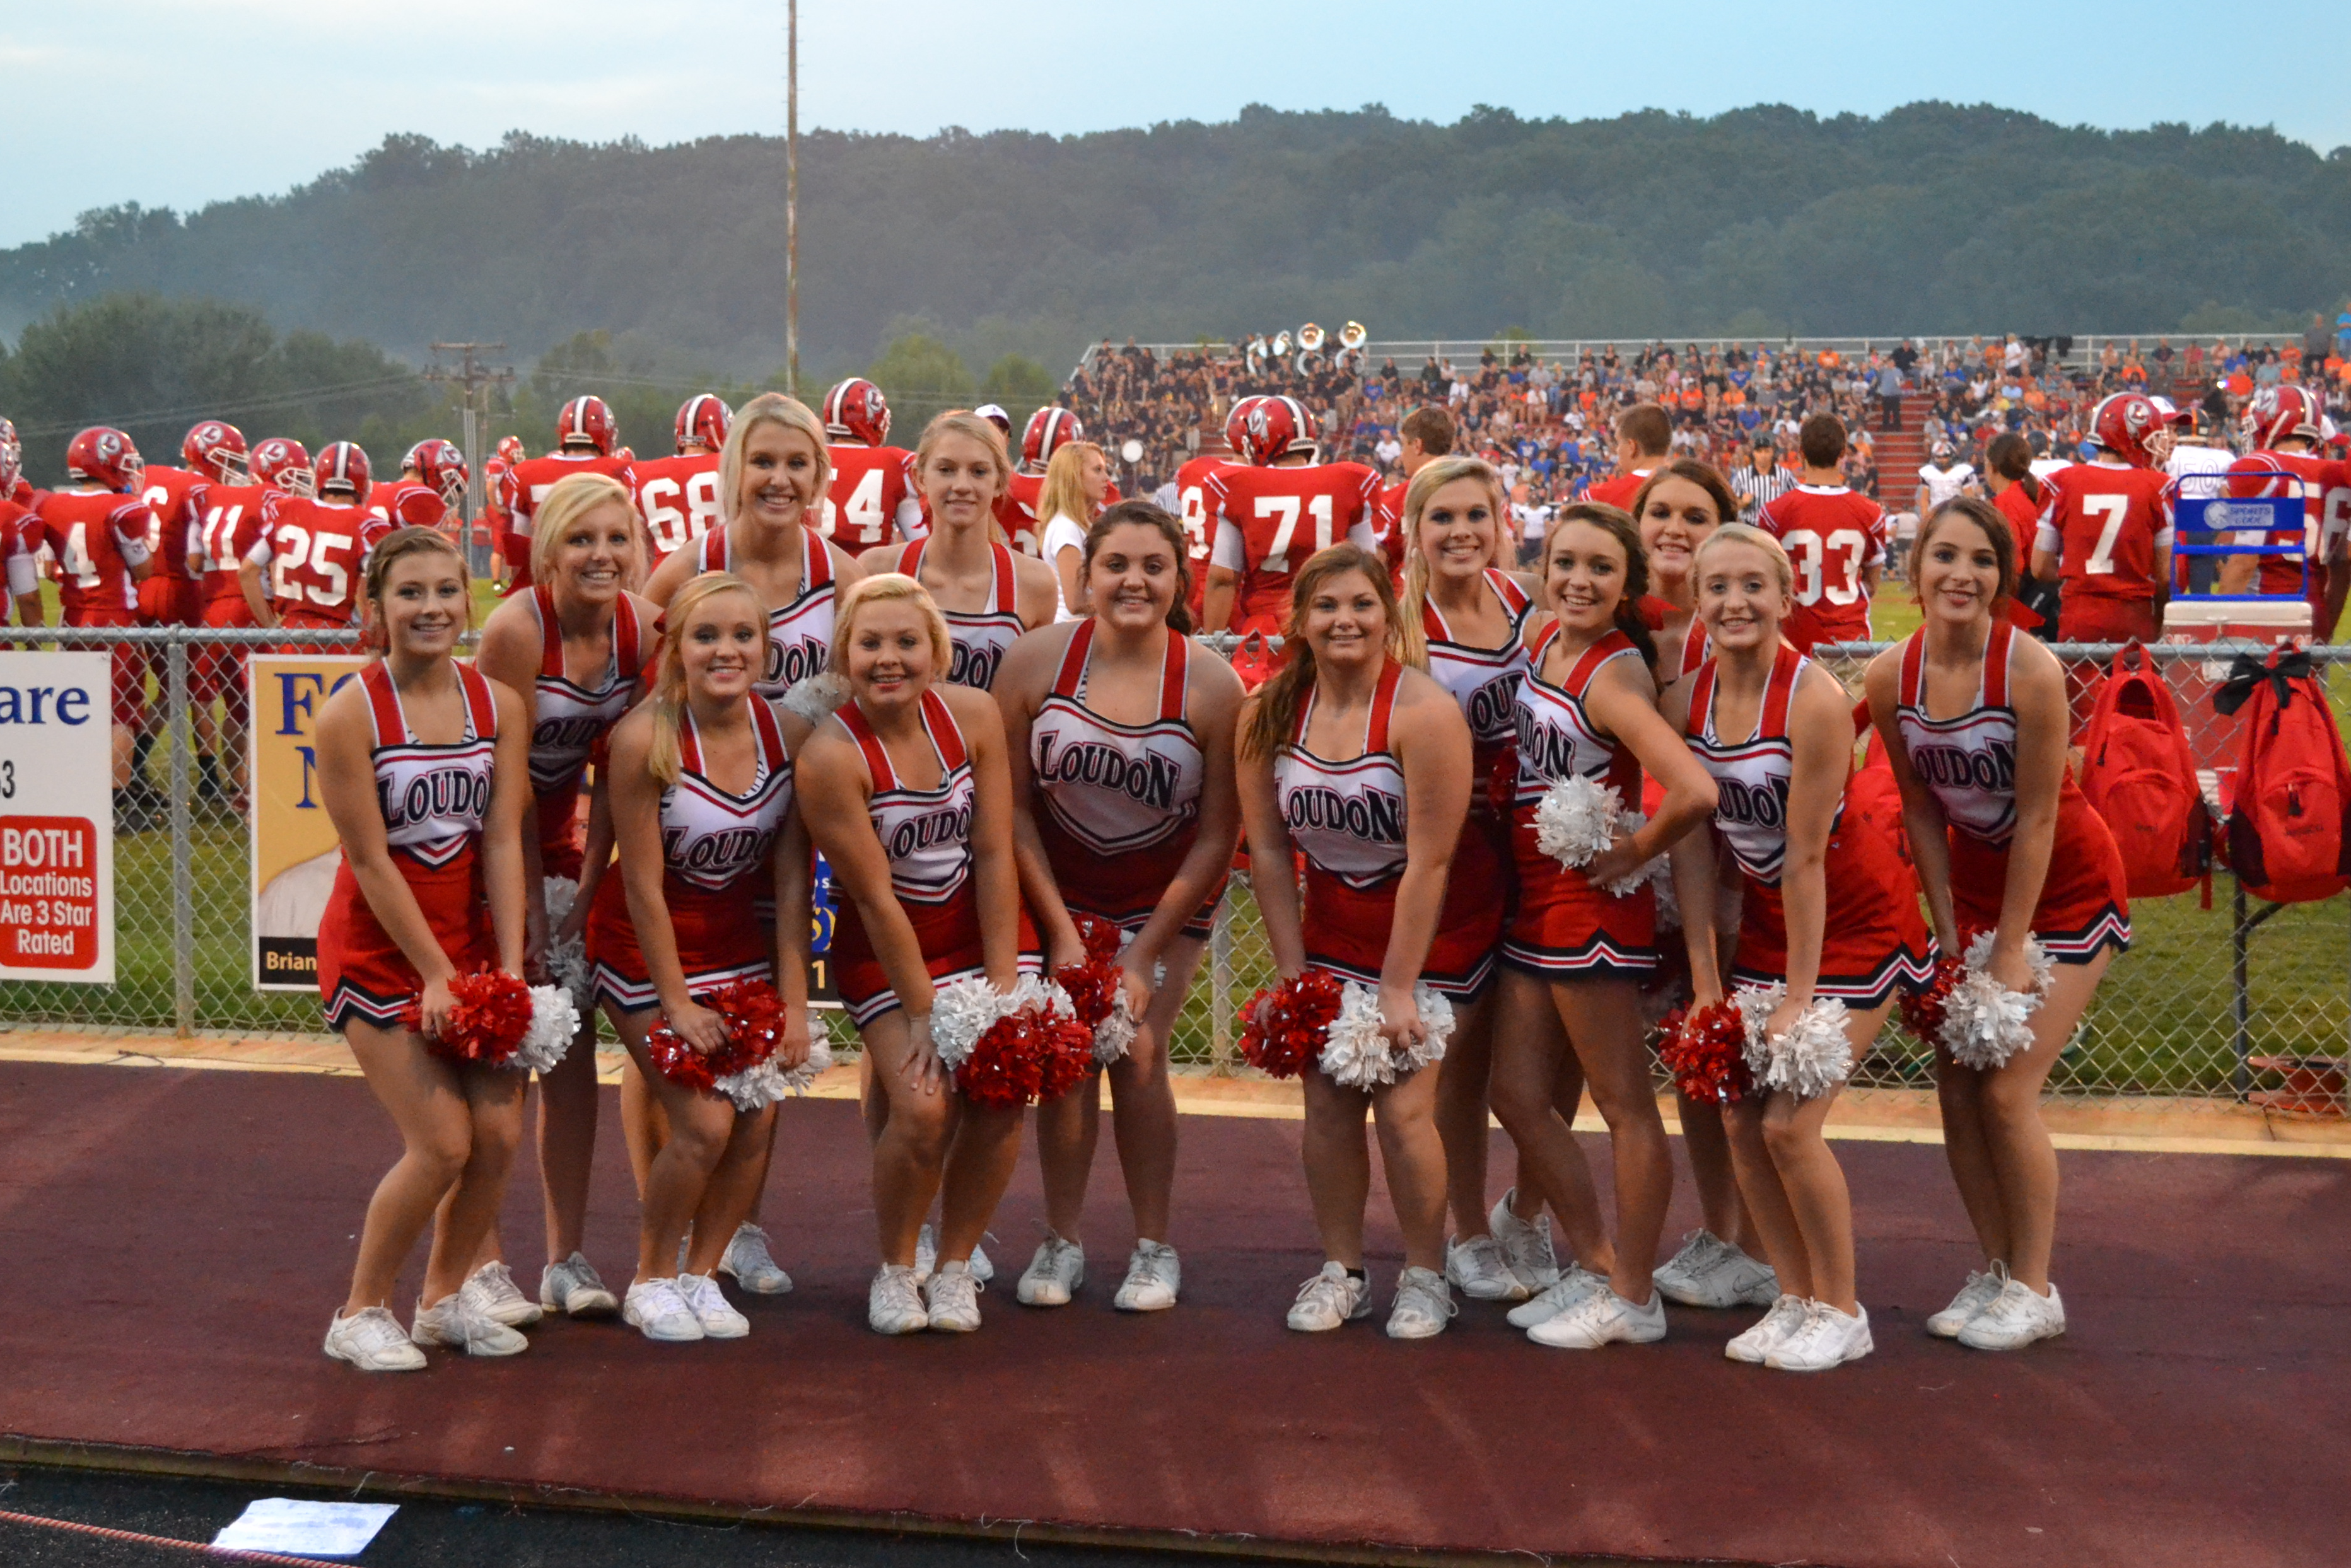 2013 Cheerleaders